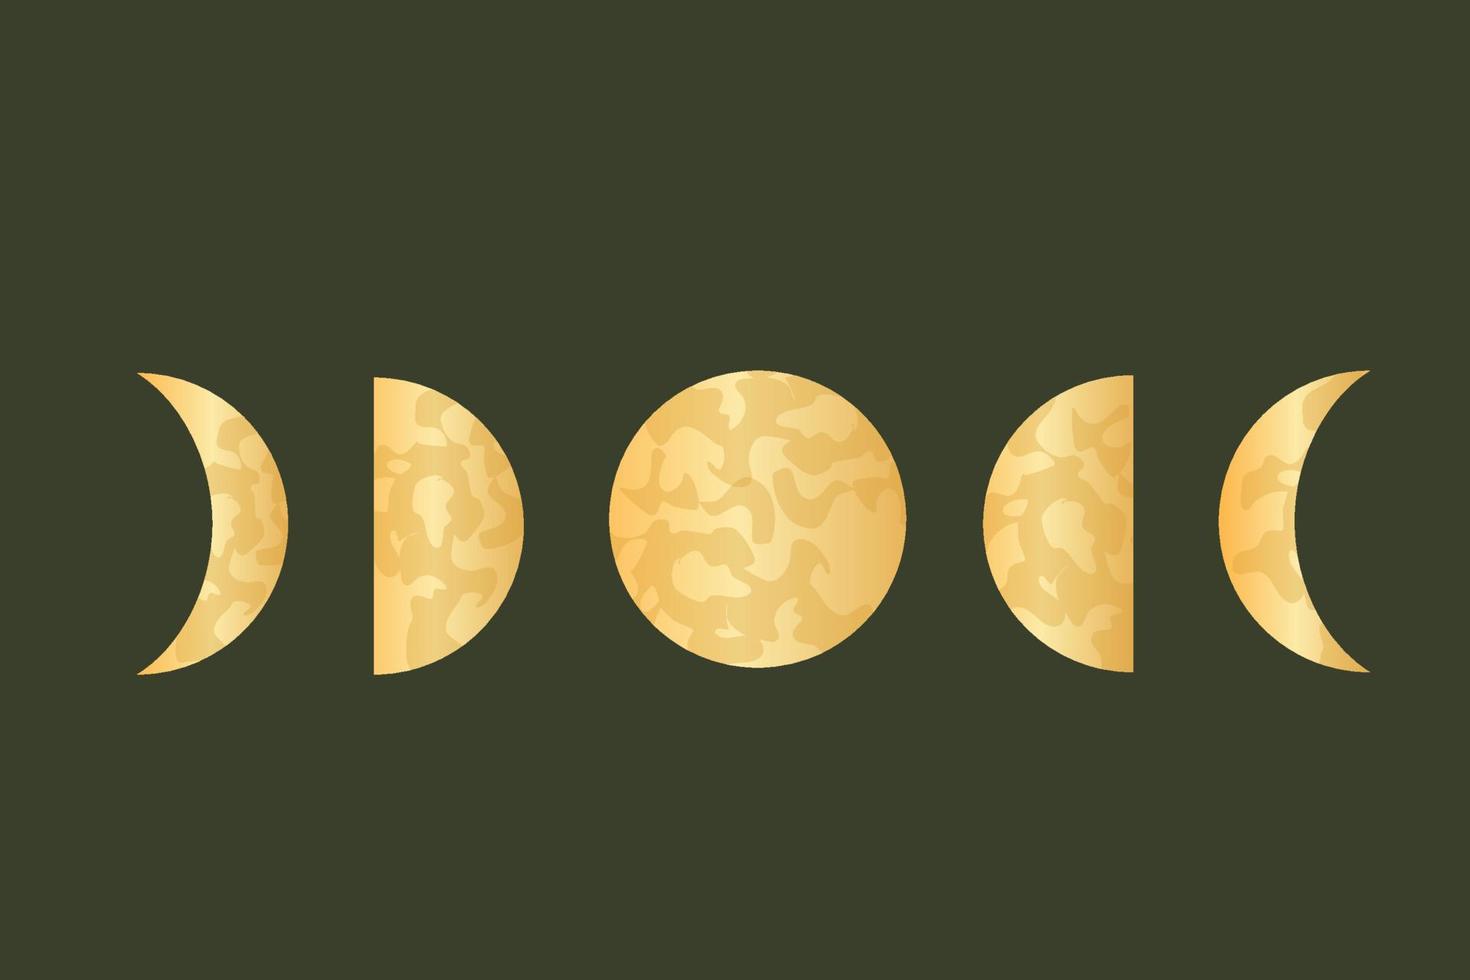 månfaser för hednisk helig astrologi. himmelsk fullständig cykel av månar. vektor illustration